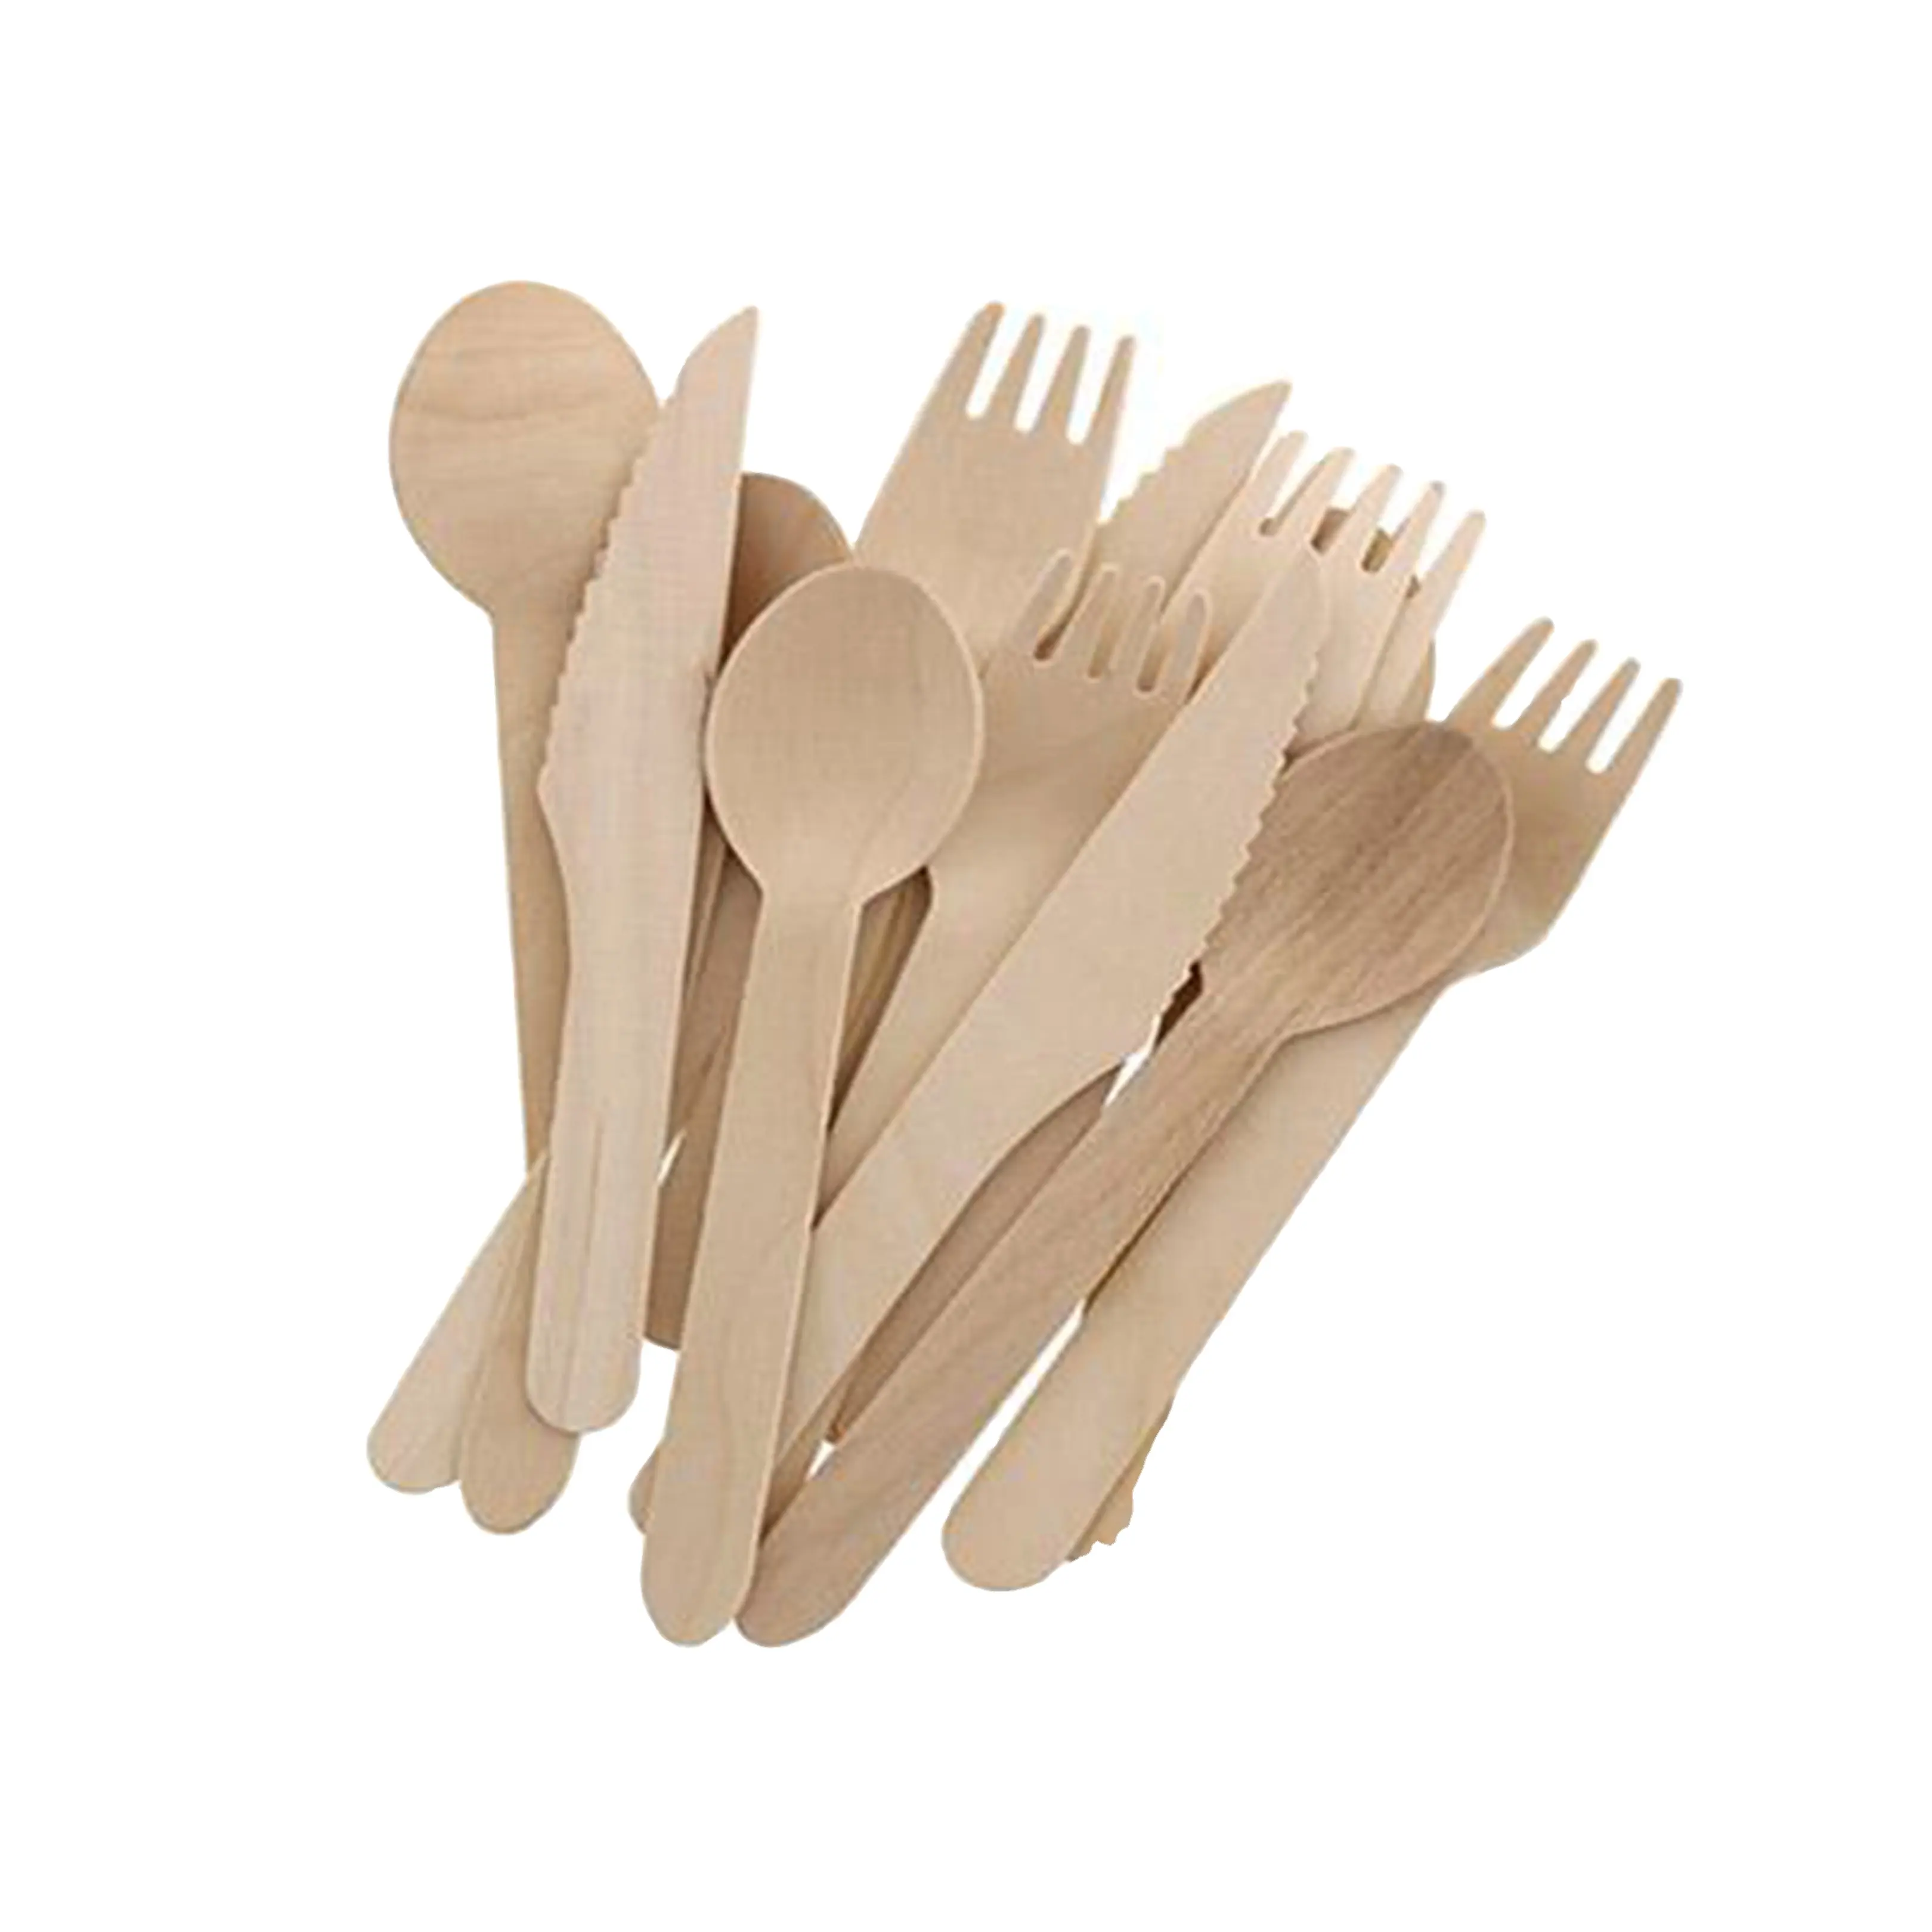 Cucchiai, forchette, coltelli e stuzzicadenti in legno usa e getta biodegradabili più venduti di alto livello